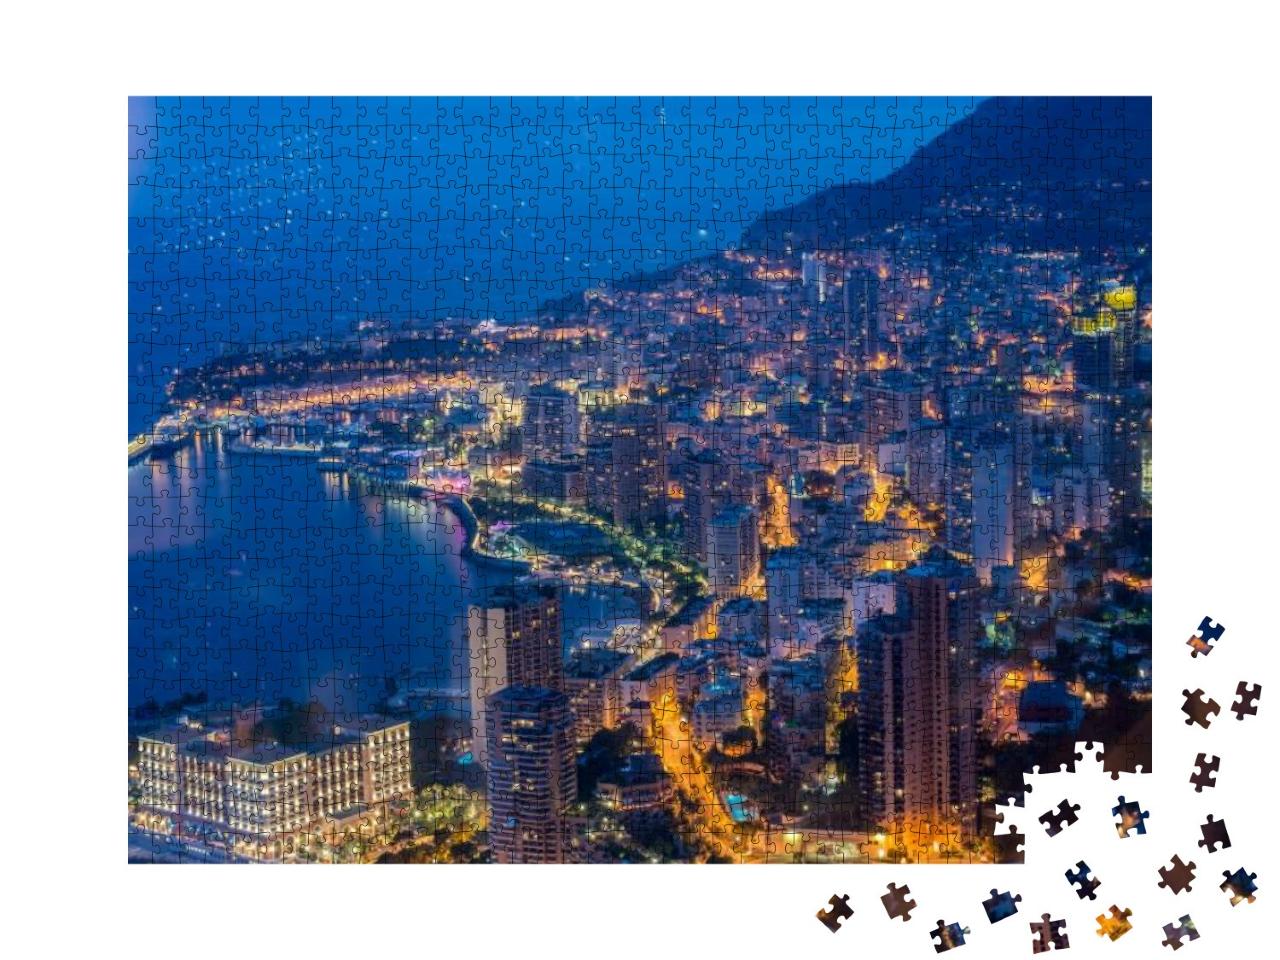 Puzzle 1000 Teile „Nachtansicht von Monaco: Blick vom Berg aus“